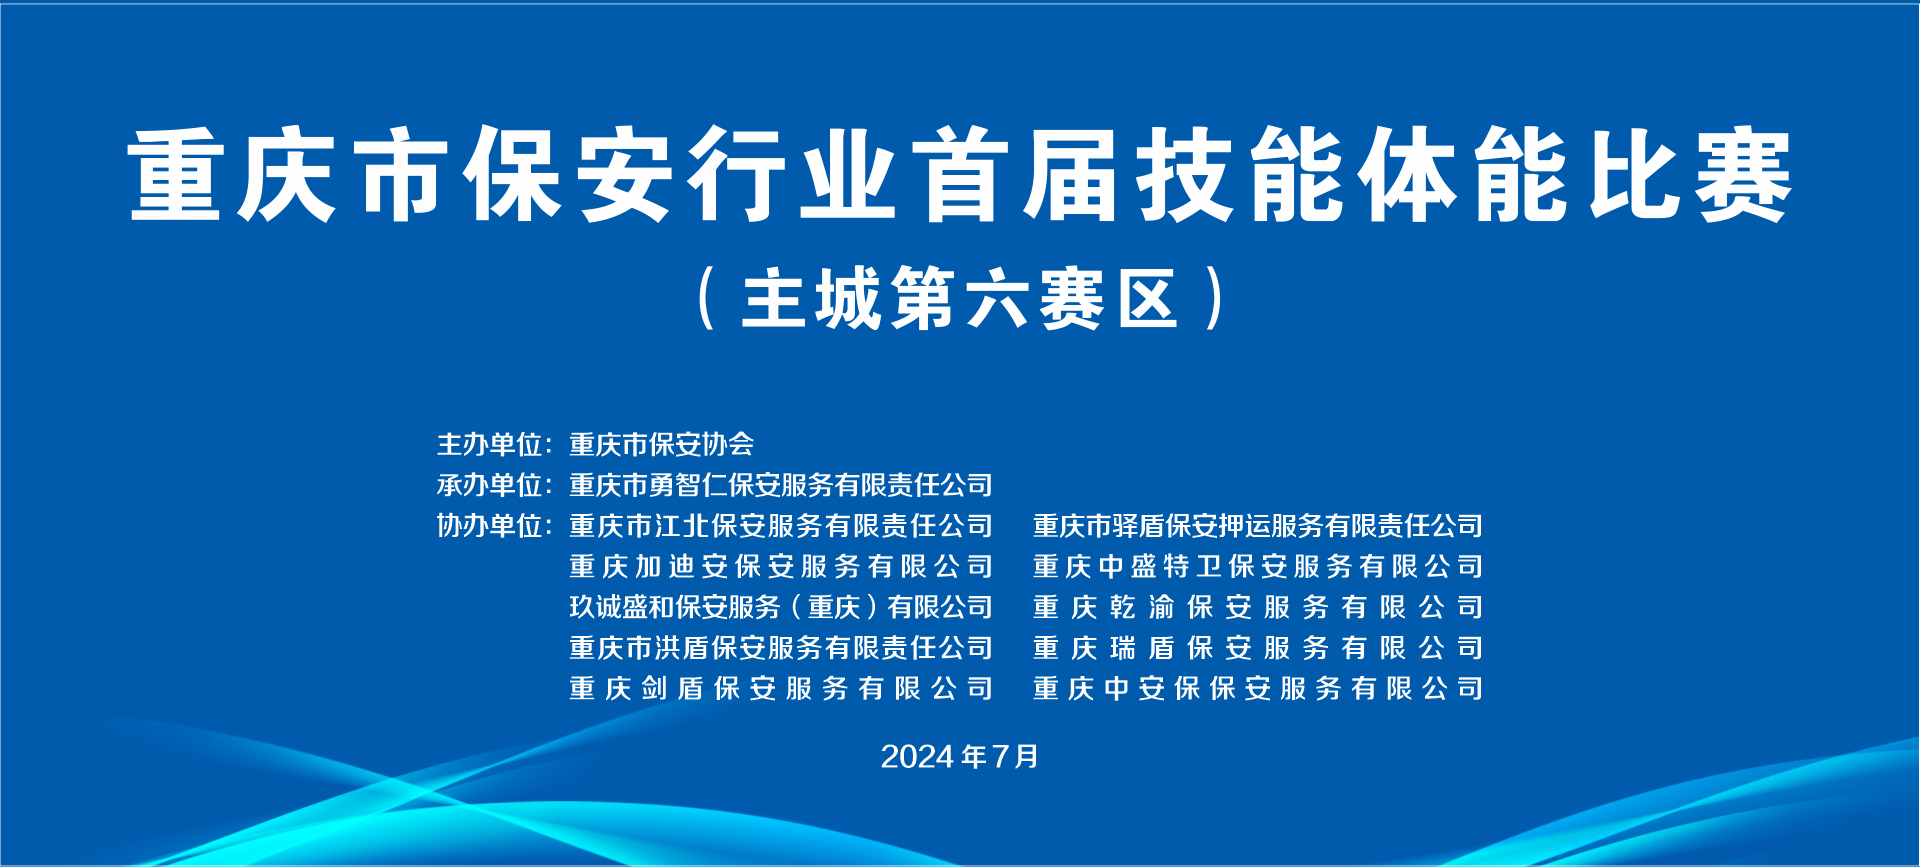 书写行业蓬勃发展 护航平安崭新篇章|重庆市保安行业首届技能体能比赛（主城第六赛区）成功举办